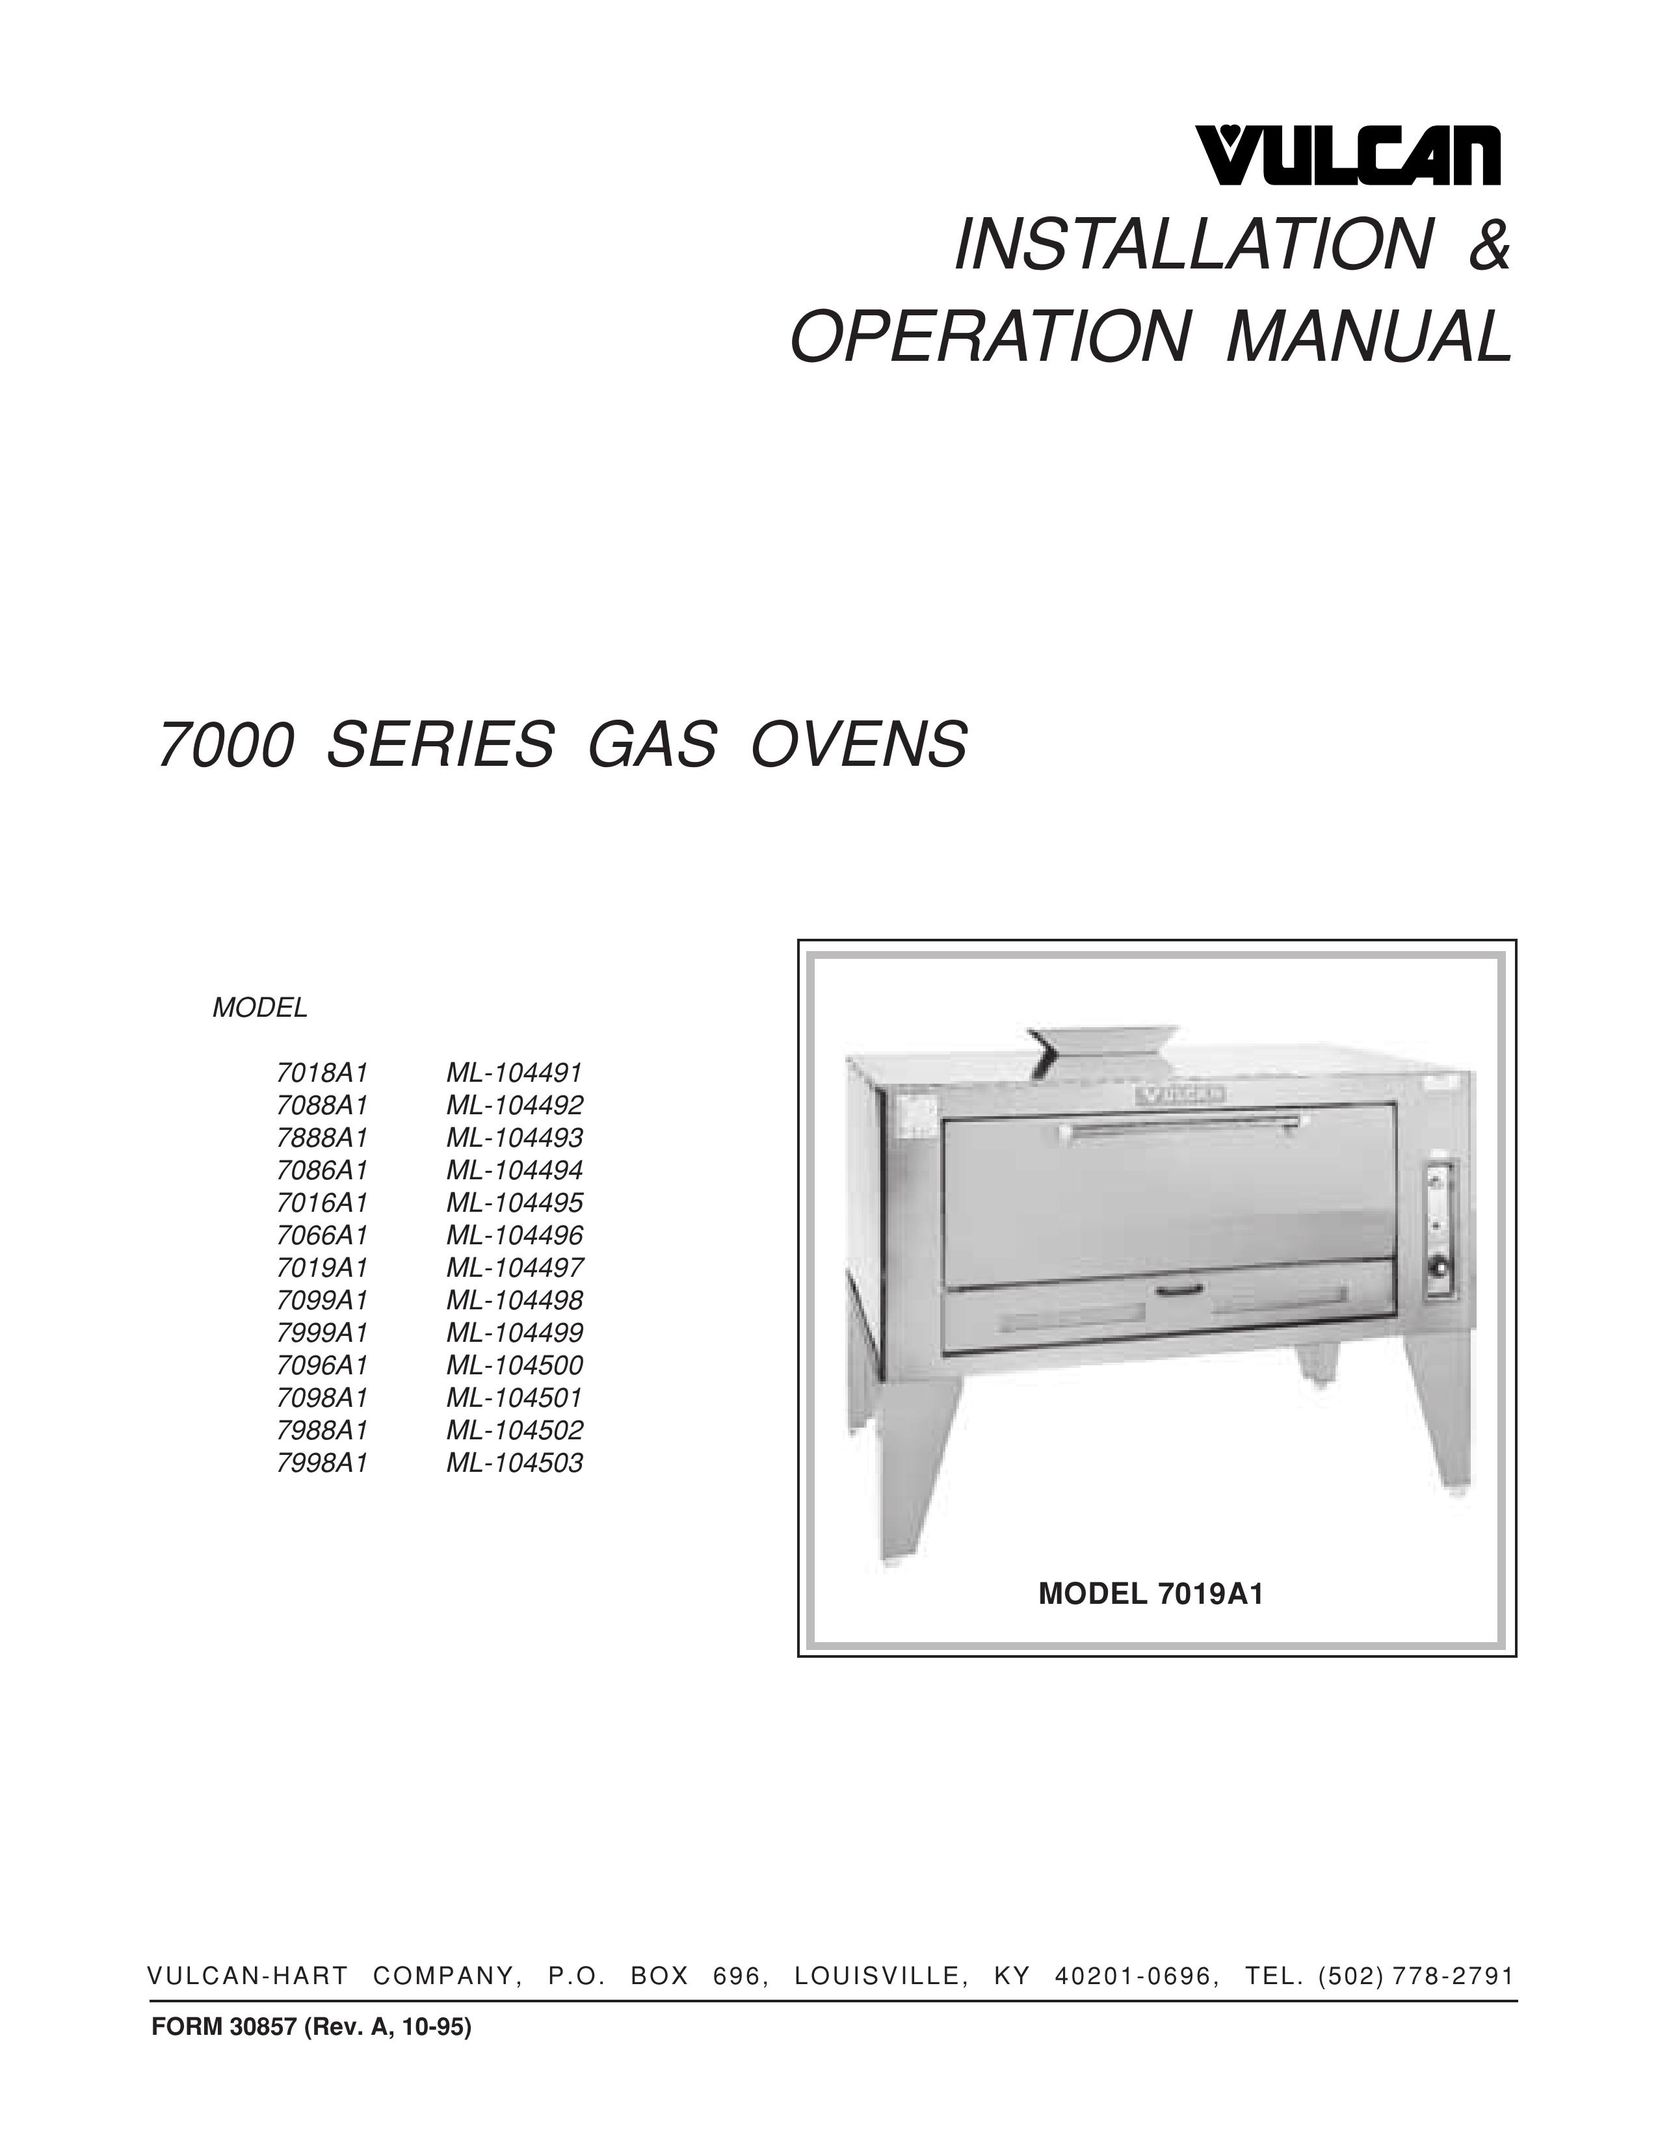 Vulcan-Hart 7098A1 ML-104501 Oven User Manual